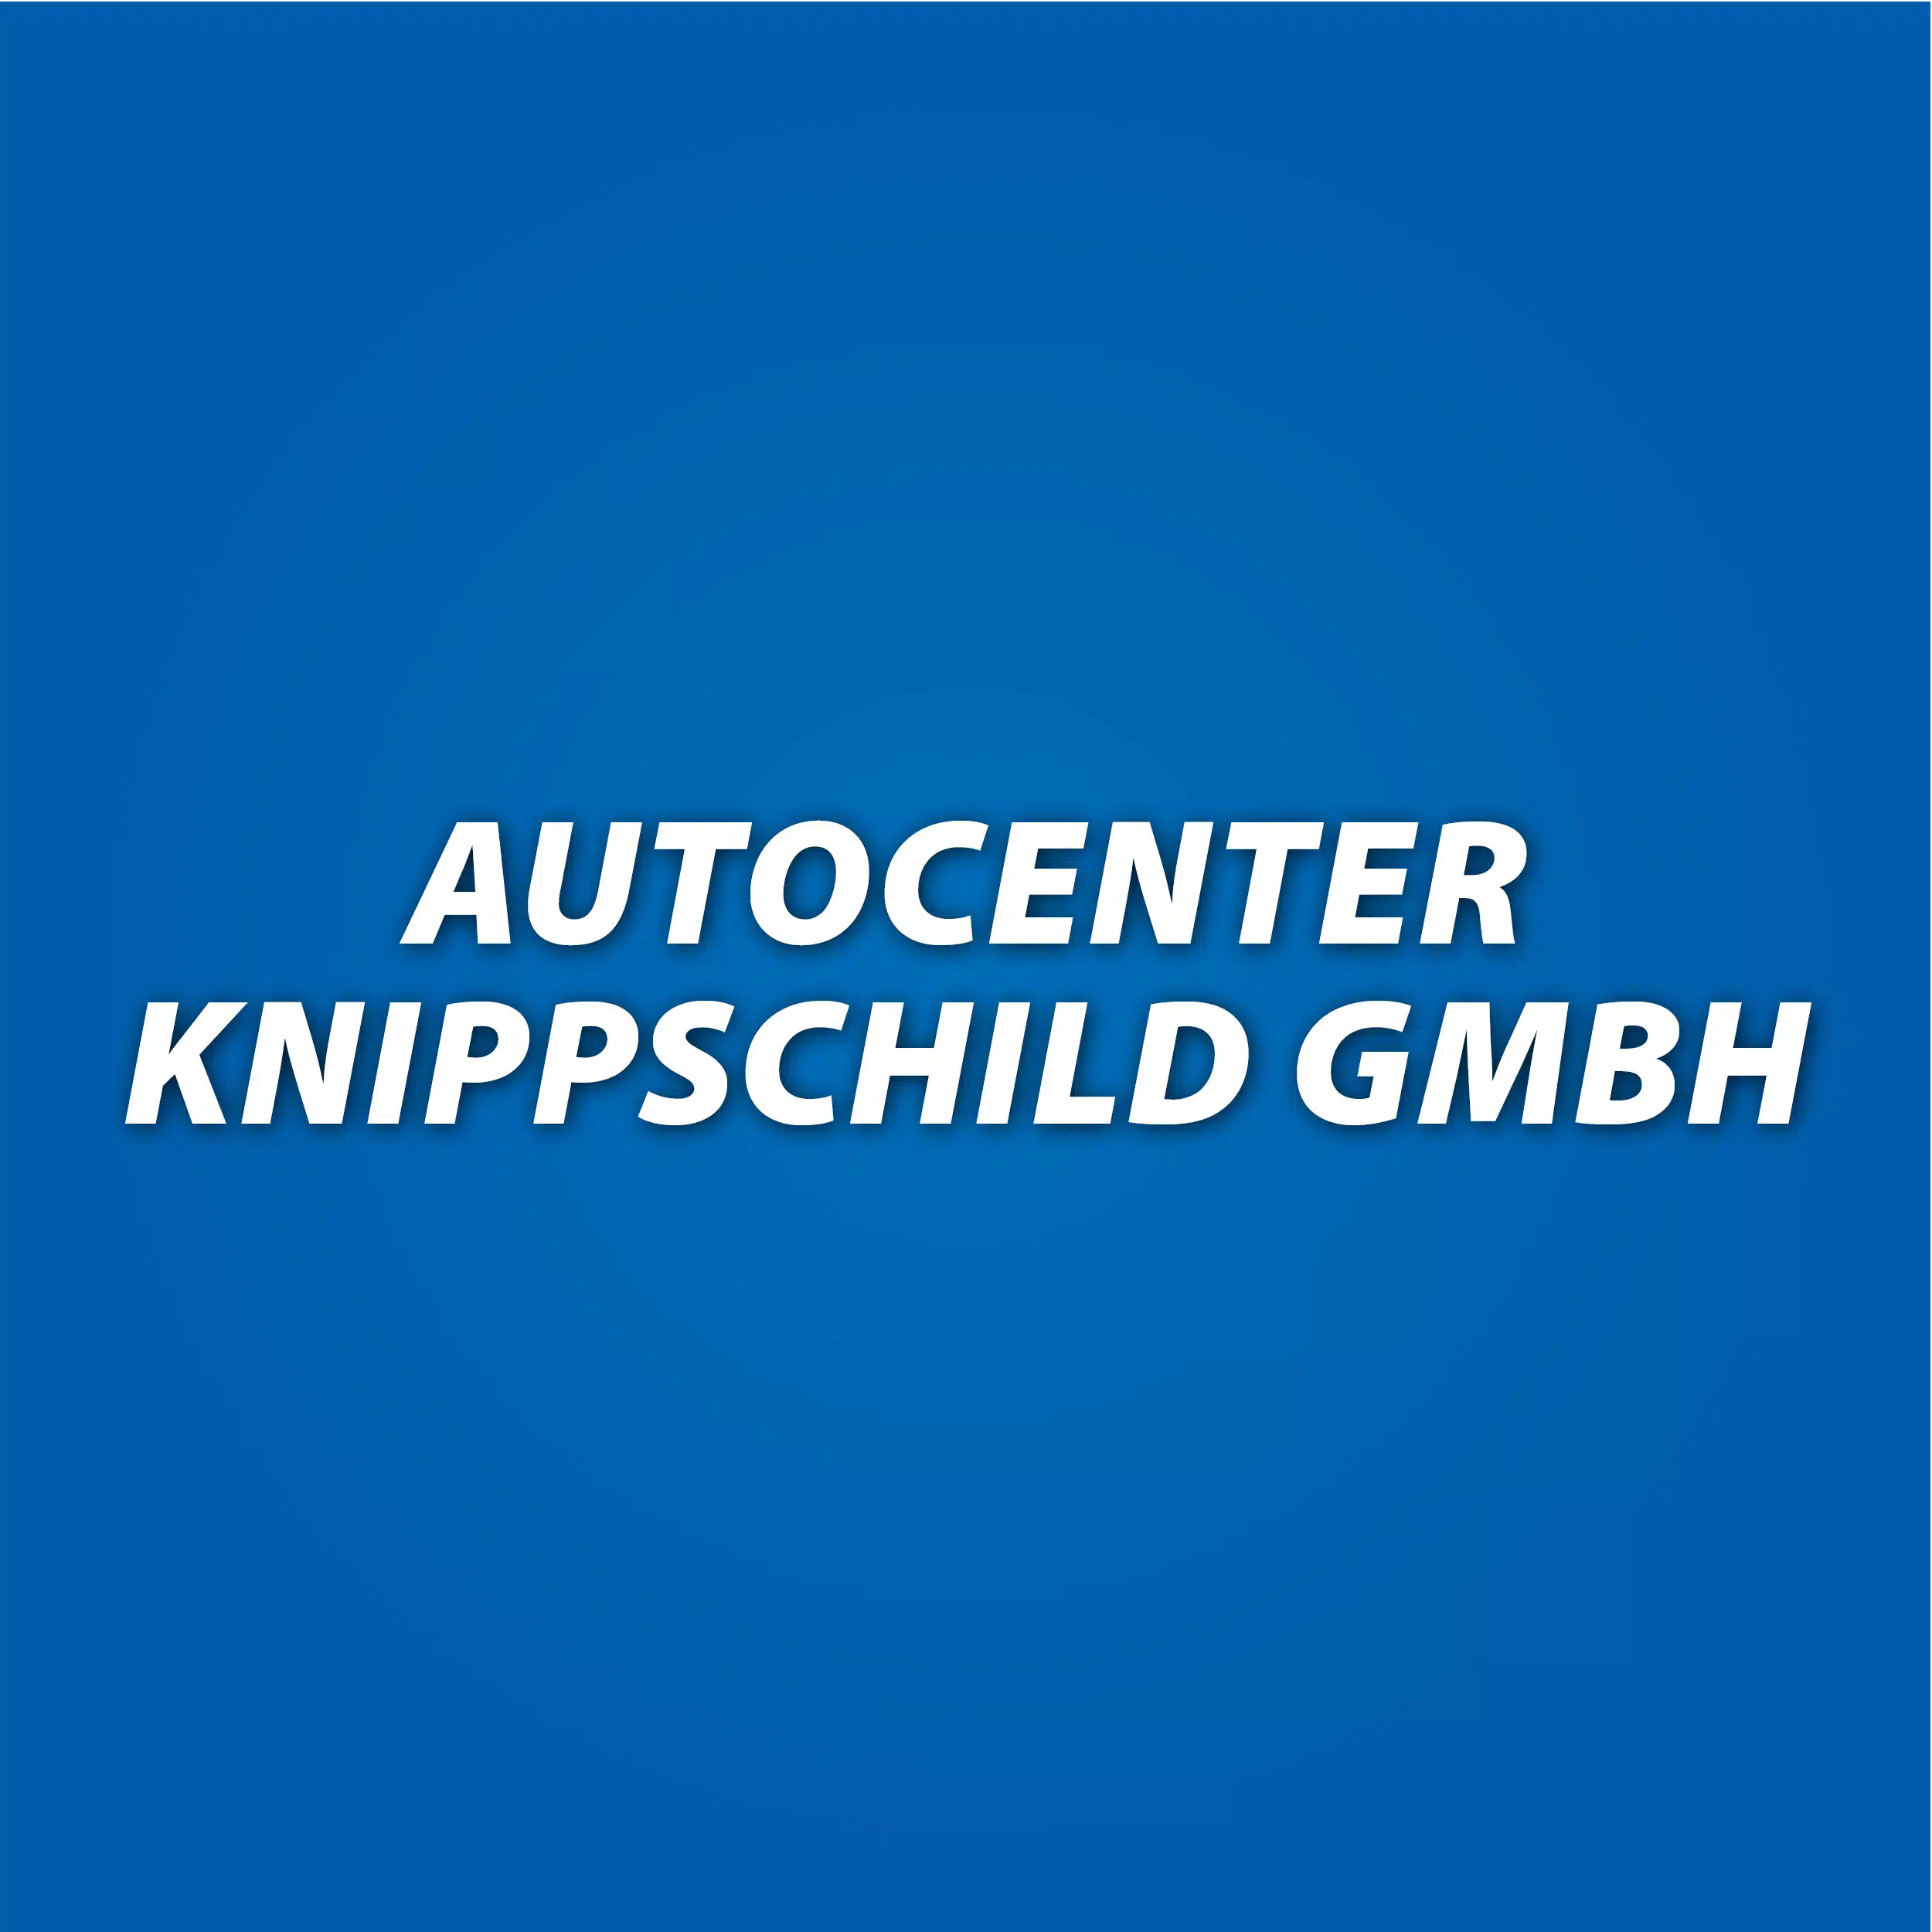 Autocenter Knippschild GmbH